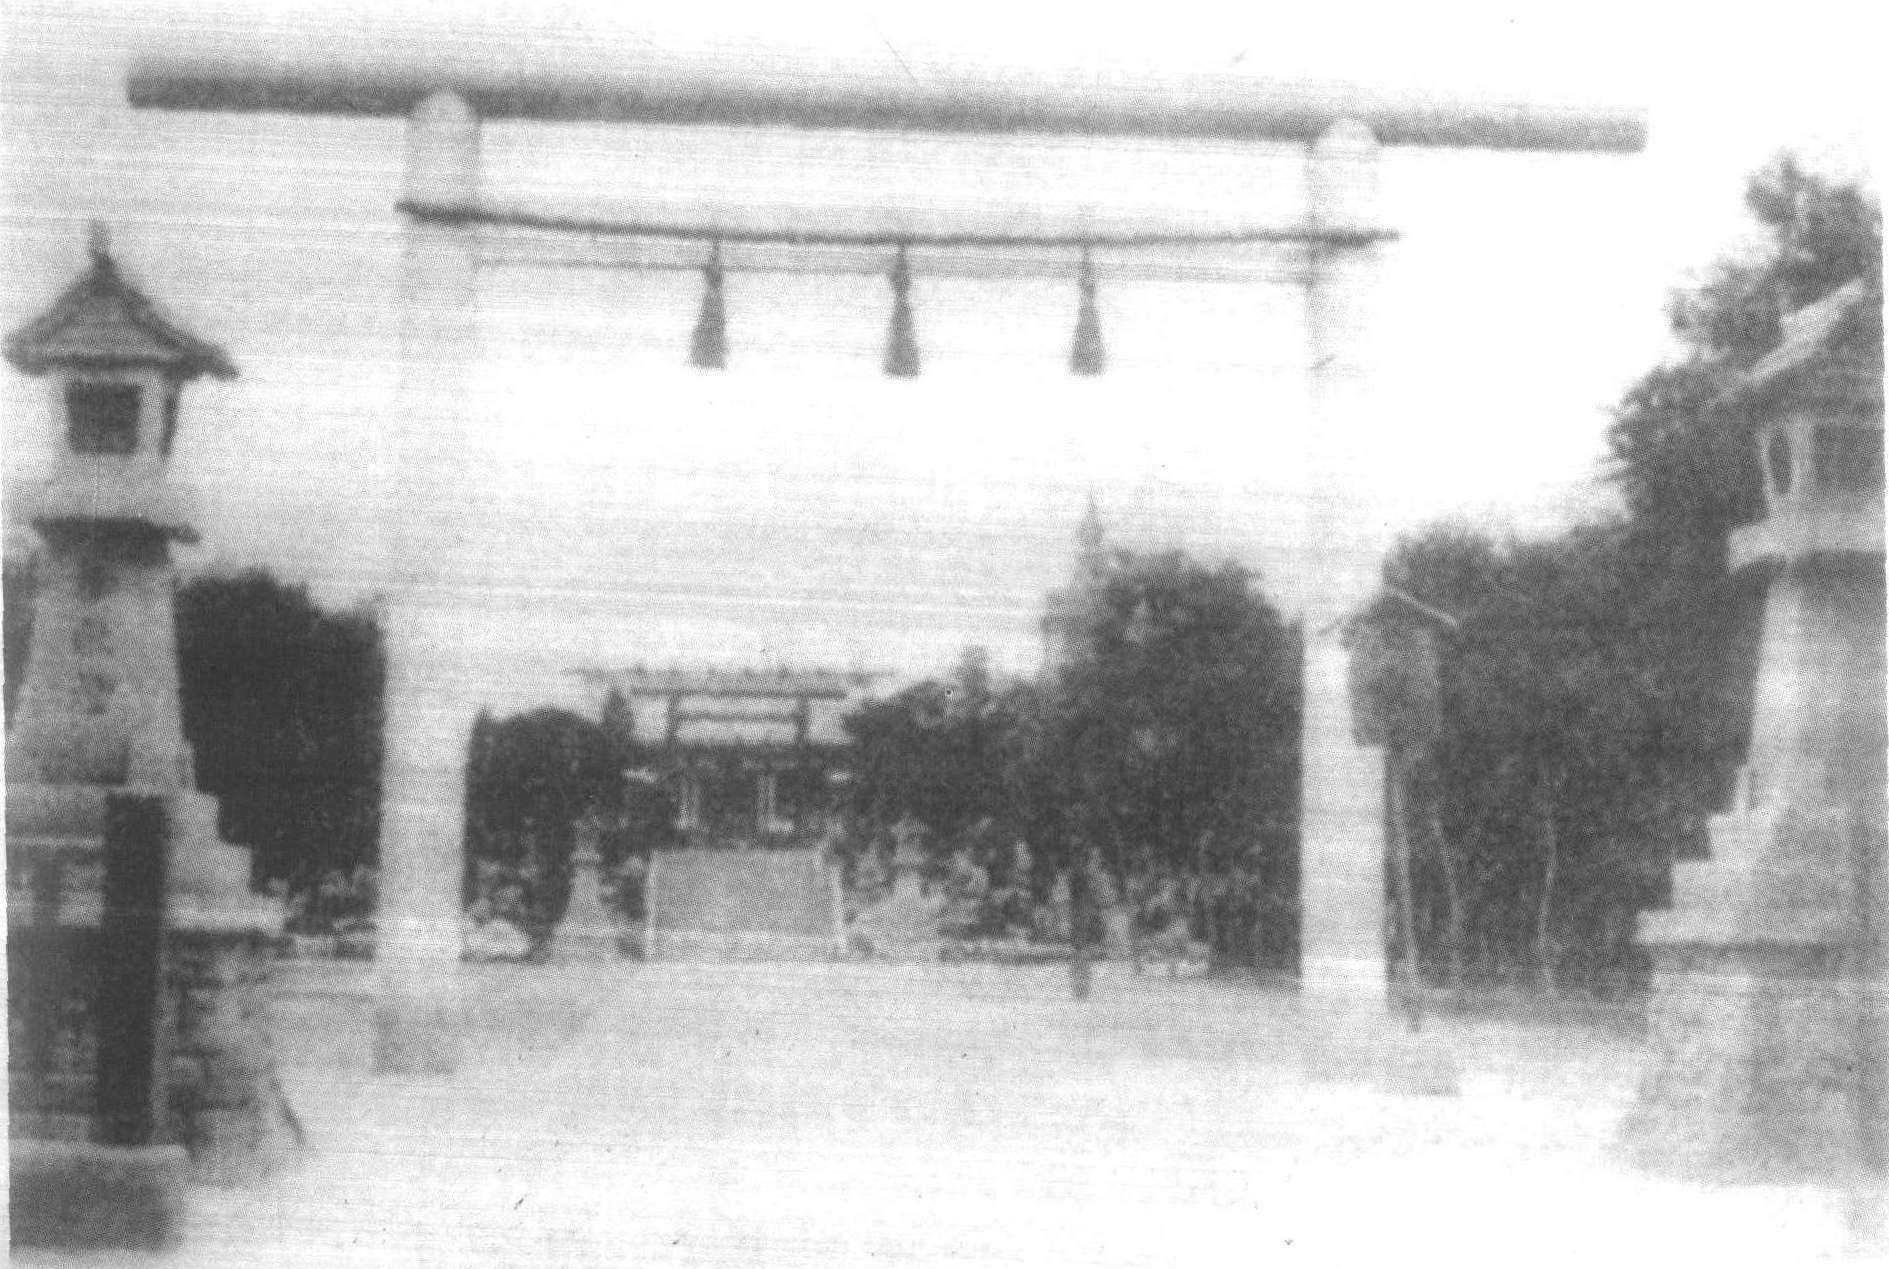 日租界的日本神社。日租界当局强迫经过此处的中国人对其鞠躬行礼。